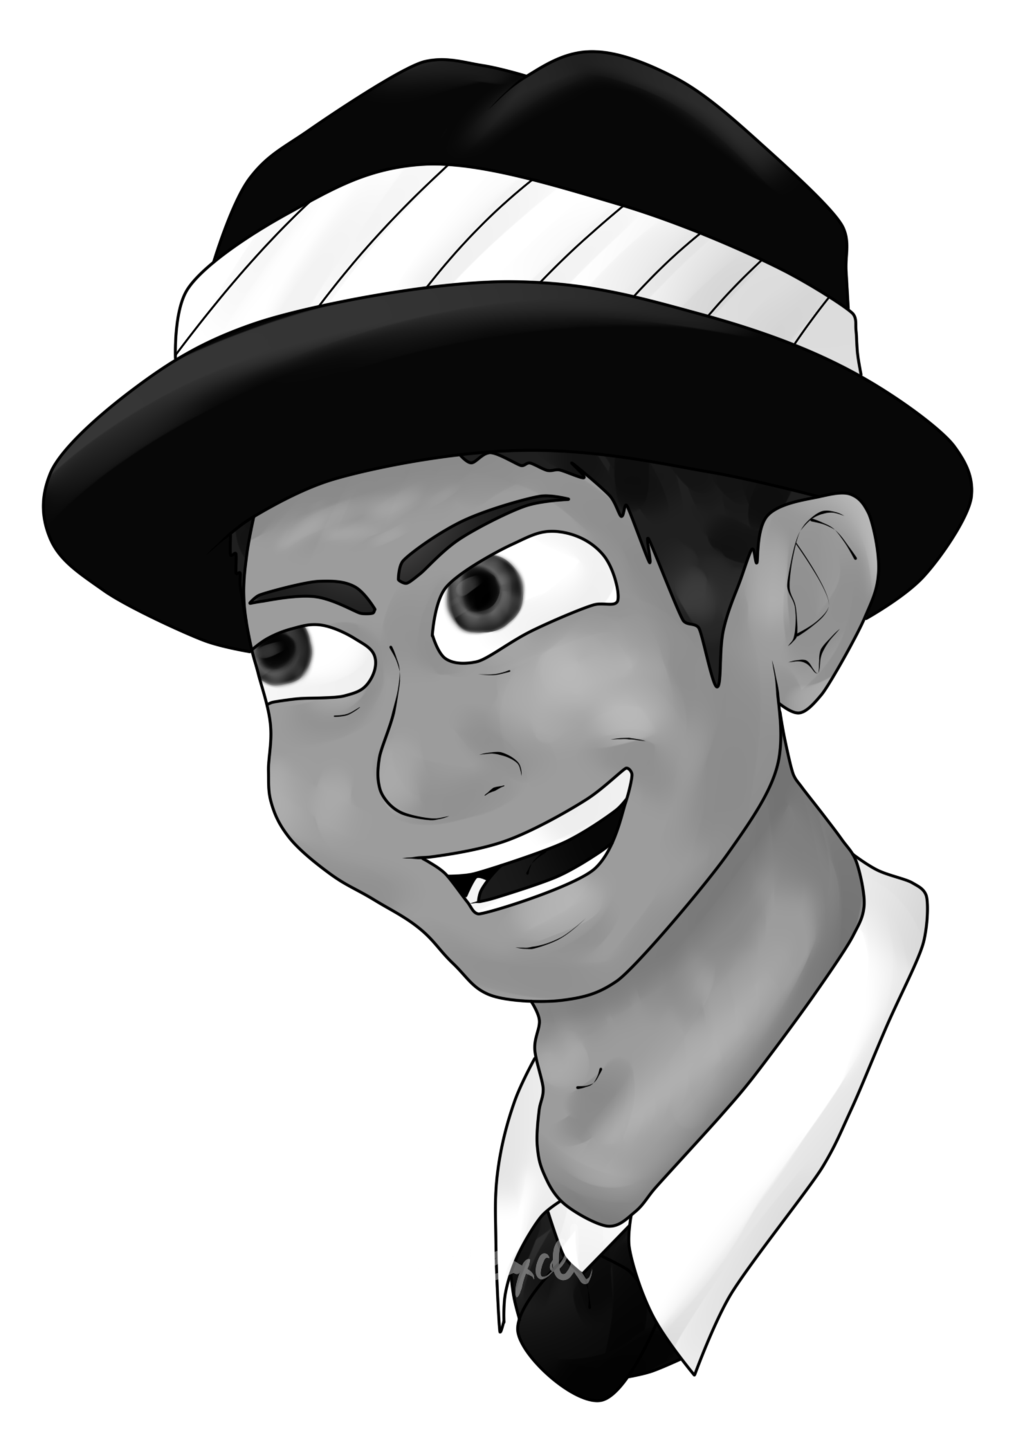 Федора Фрэнк Синатра. Мультяшный персонаж с черной шляпой. Белый мультяшный персонаж в черной шляпе. Мультяшный персонаж с черным носом.